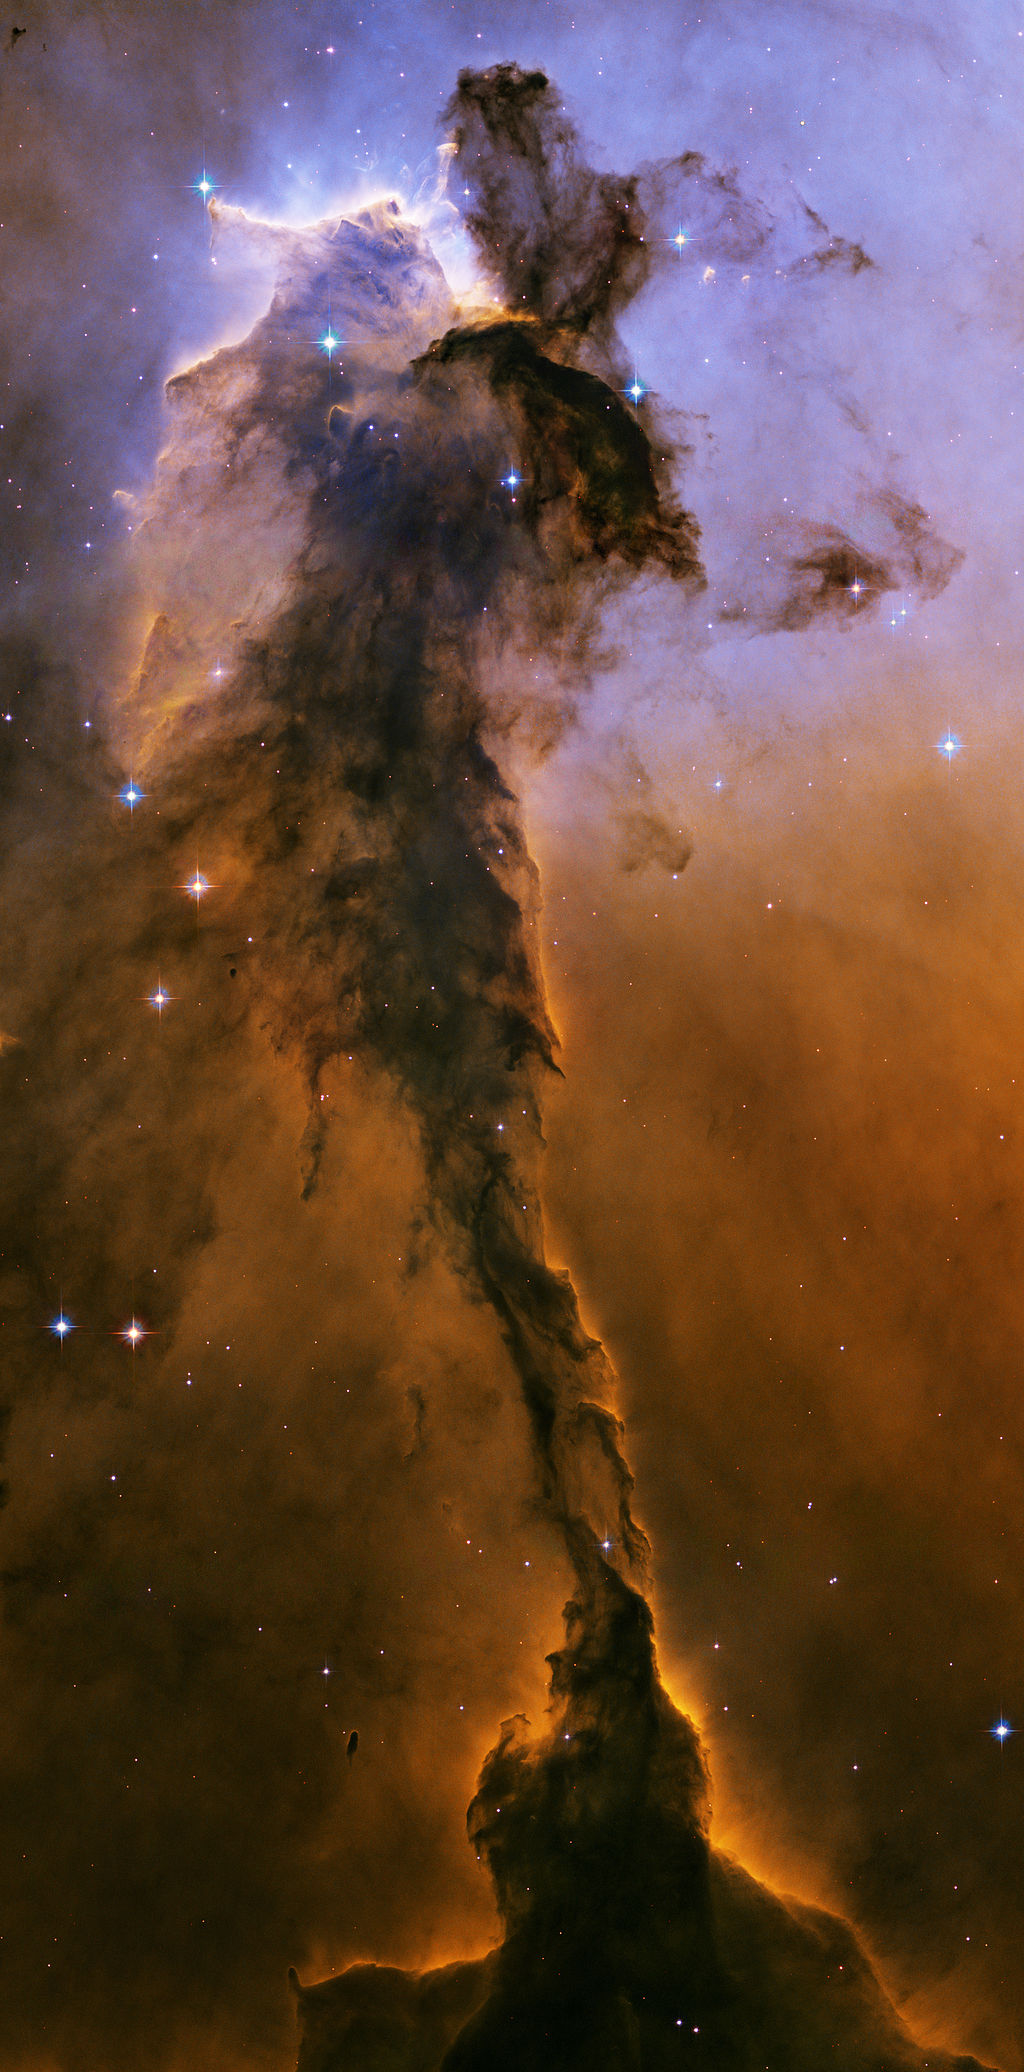 M16 (the Eagle Nebula)